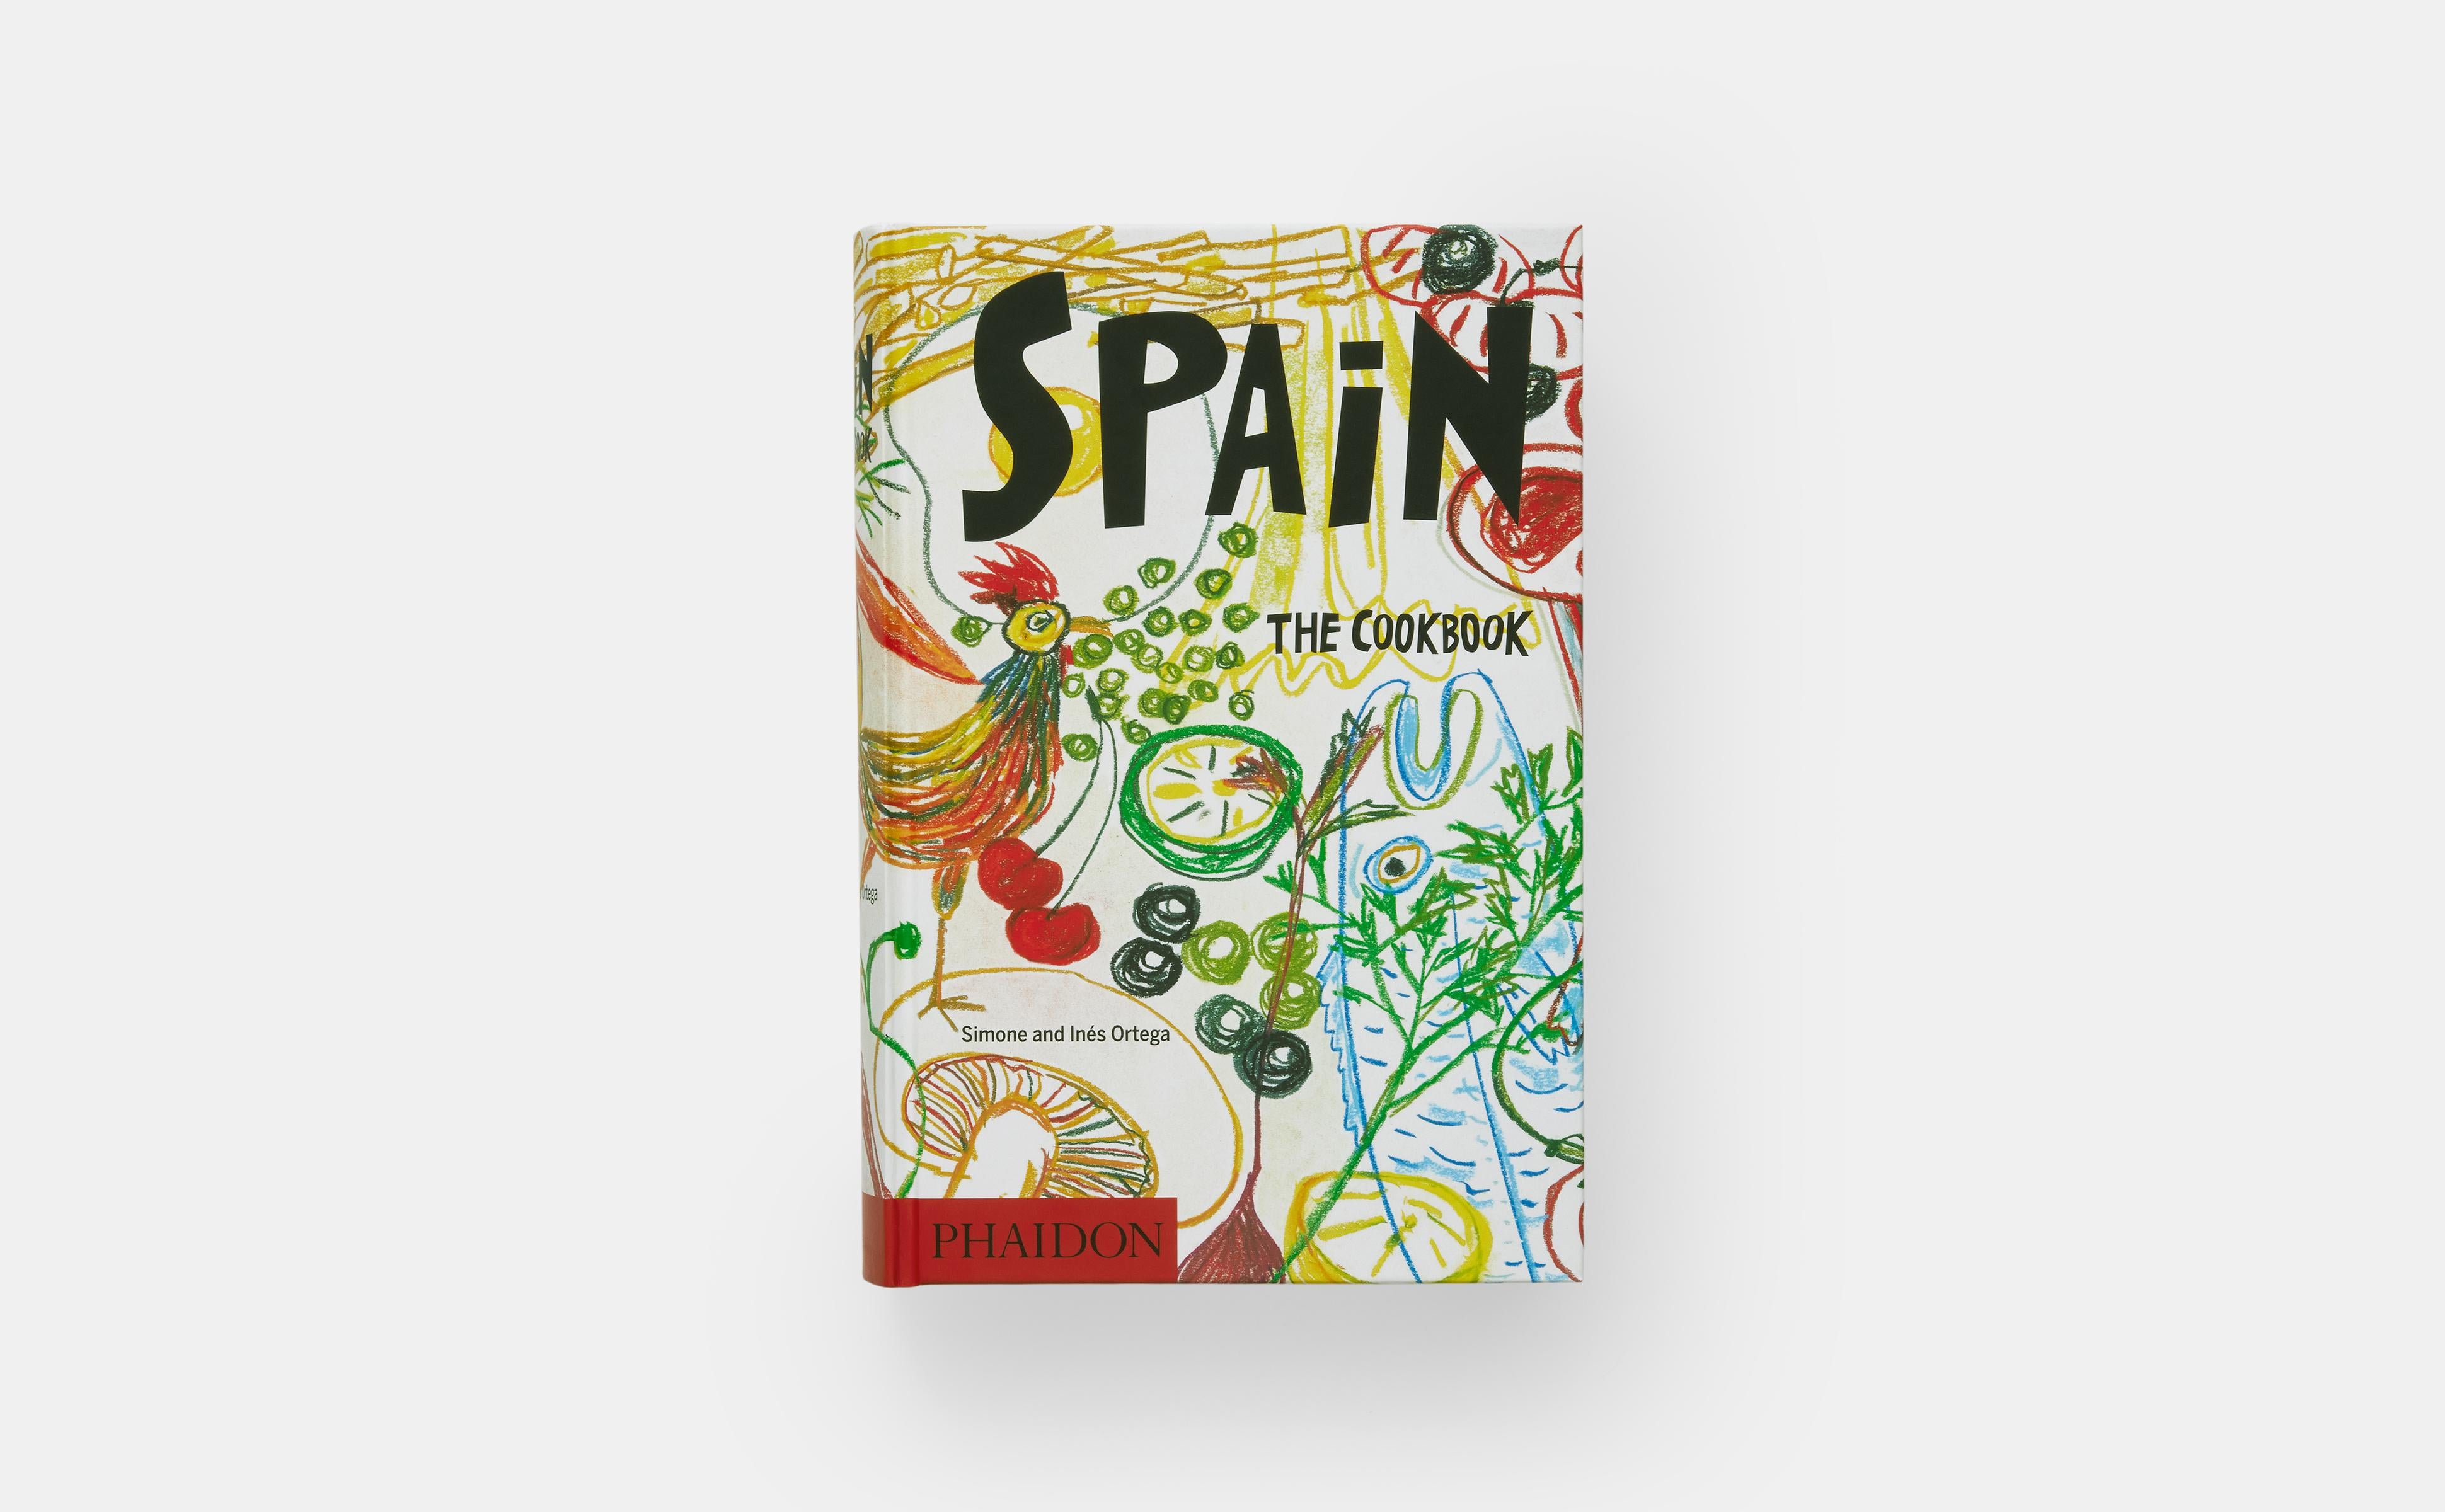 Der Bestseller über traditionelle und authentische spanische Hausmannskost, mit 1.080 leicht nachzukochenden Rezepten

Spanische Köchinnen und Köche vertrauen diesem traditionellen Kochbuch seit seiner Erstveröffentlichung vor über 40 Jahren und